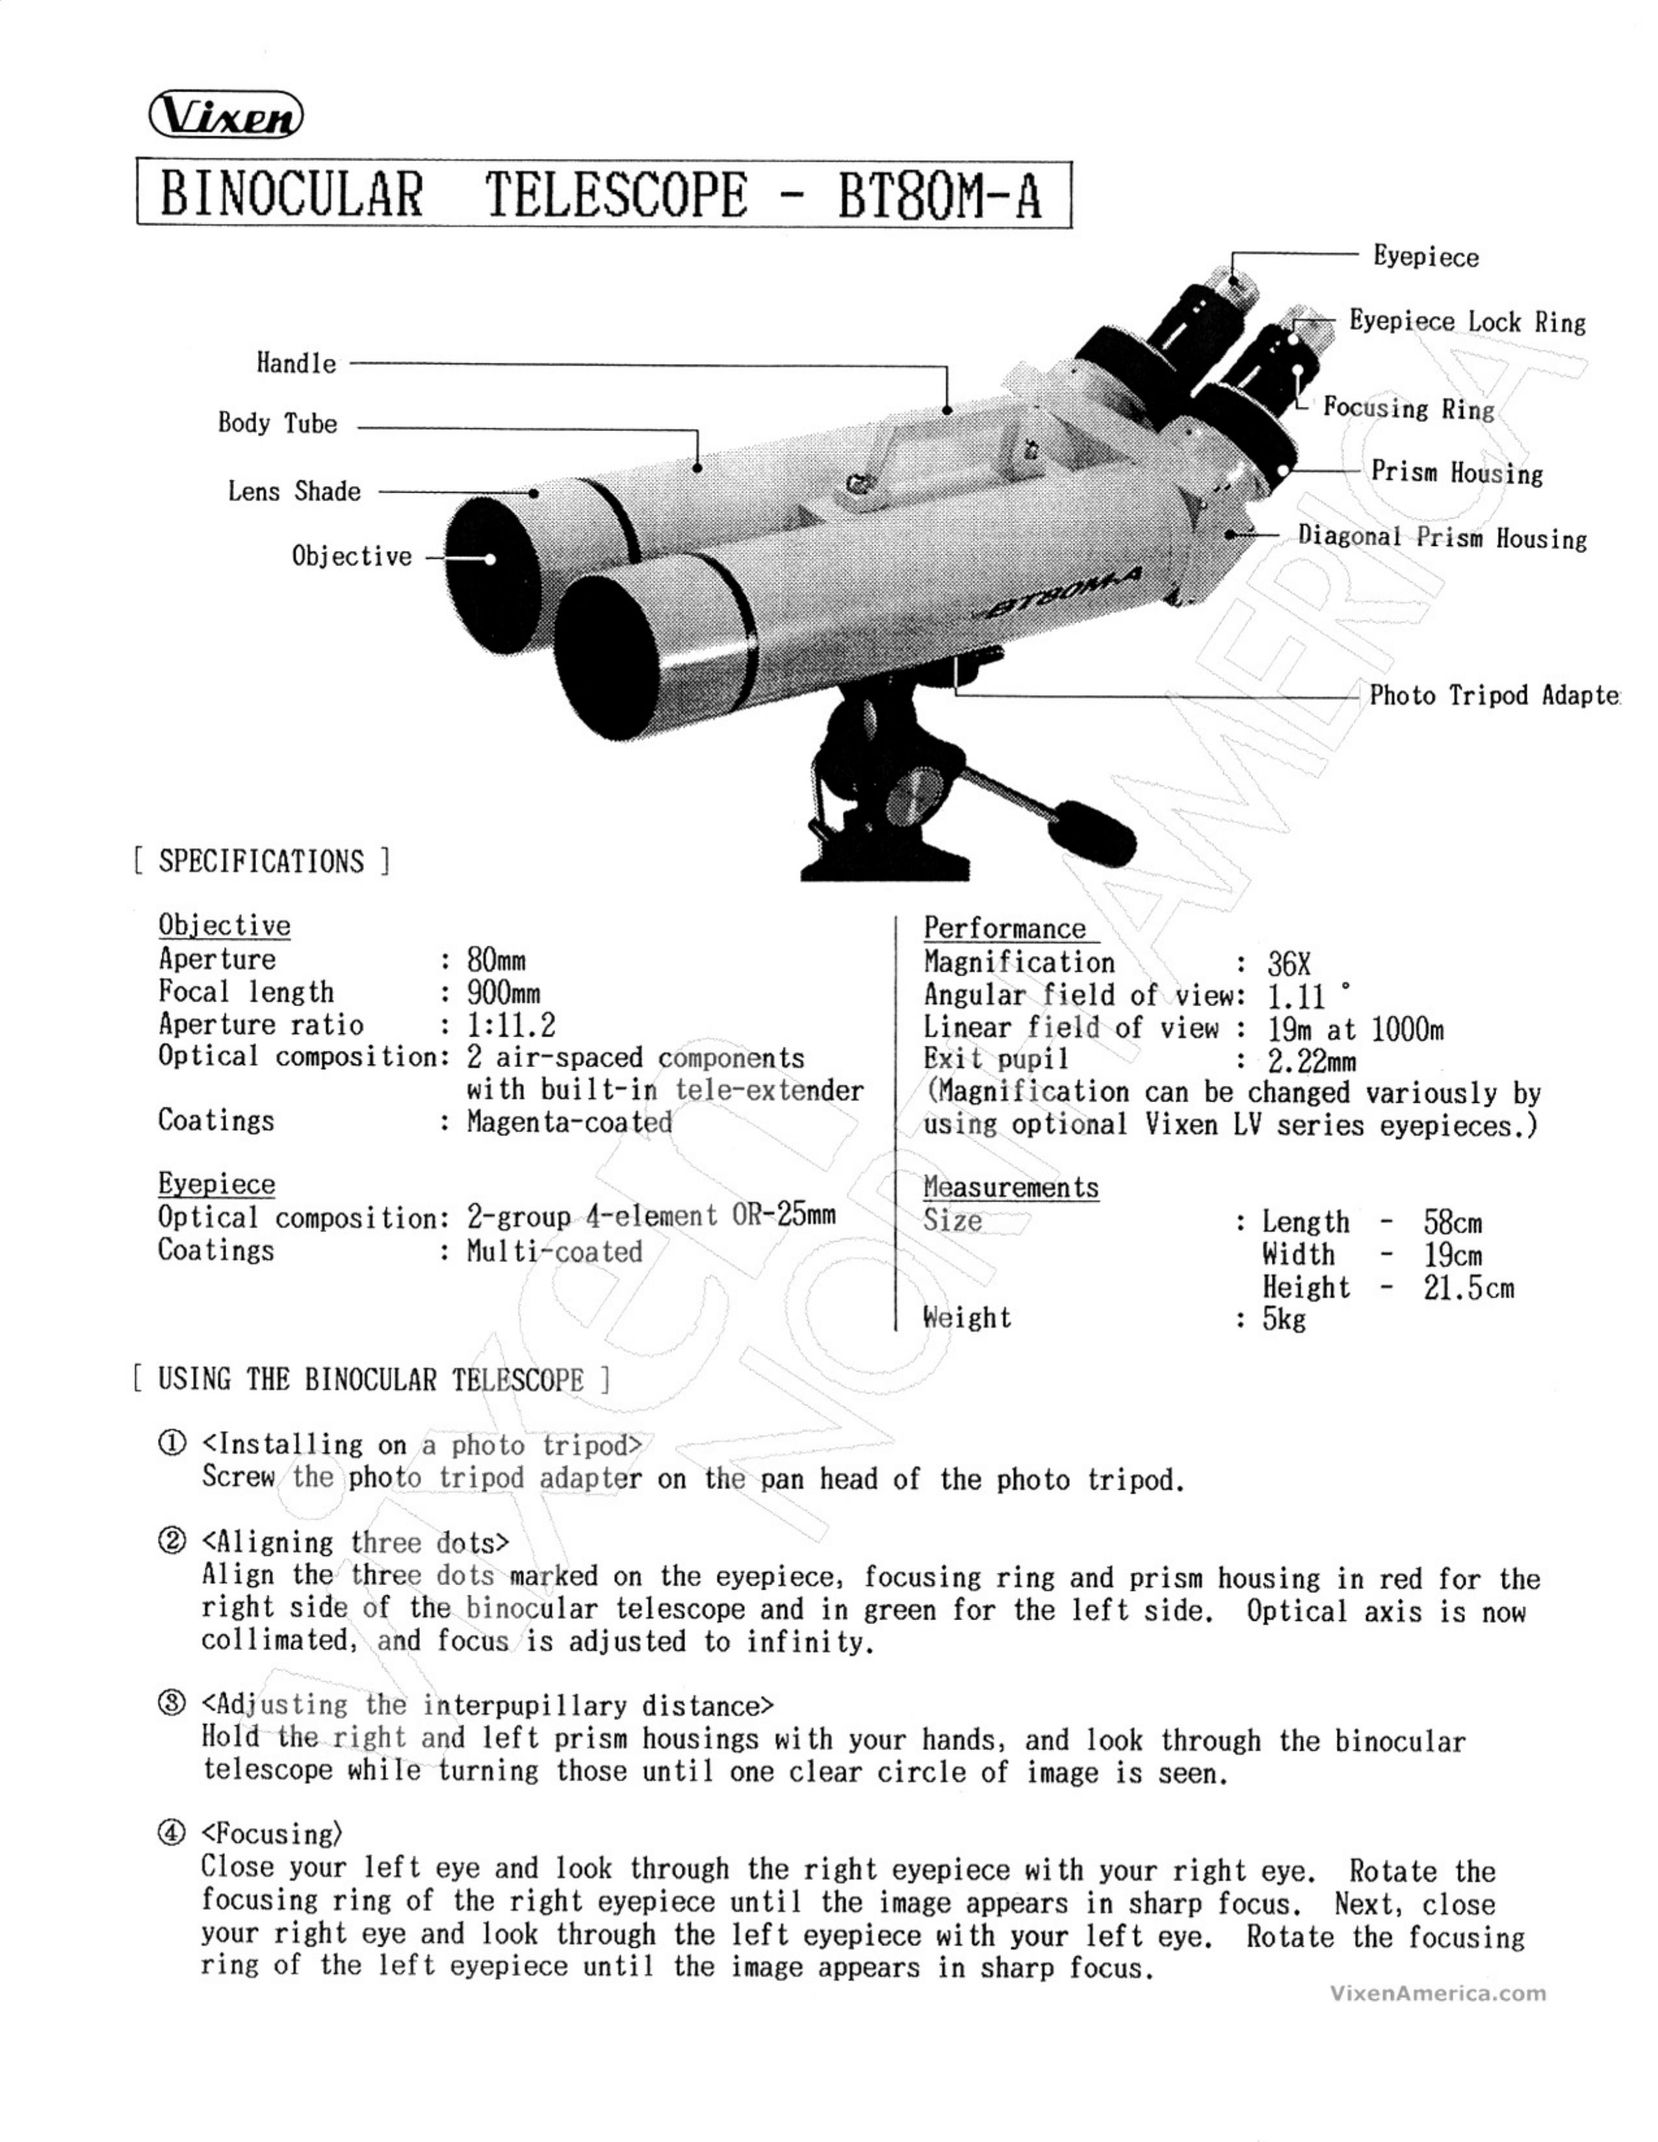 Vixen BT80M-A Binoculars User Manual